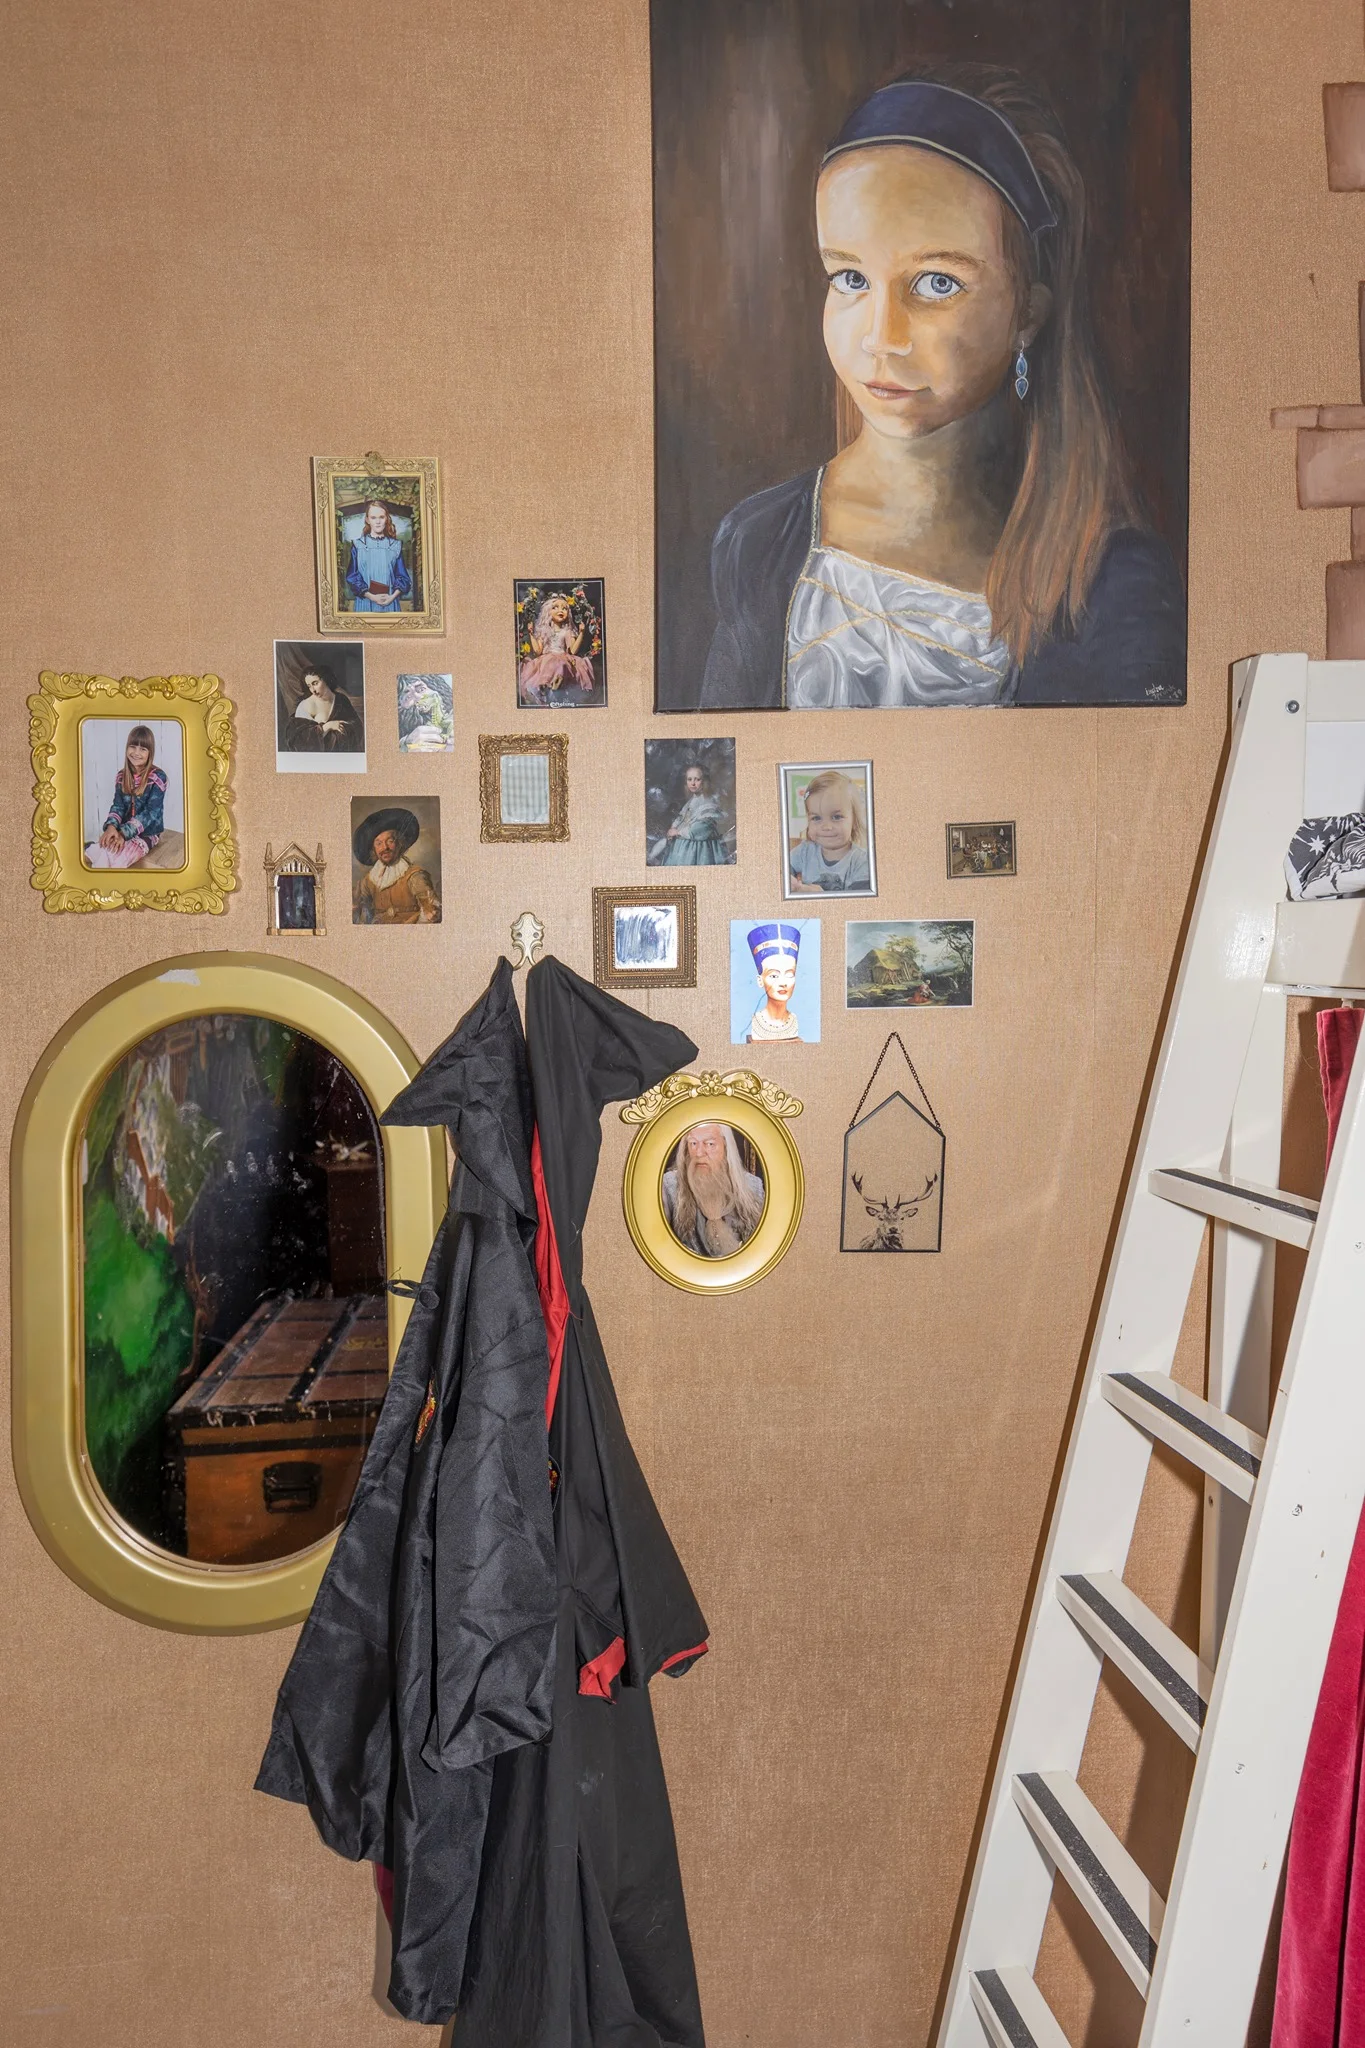 Мама создала для дочери комнату в стилистике Гарри Поттера, и теперь ей все завидуют - фото 452706